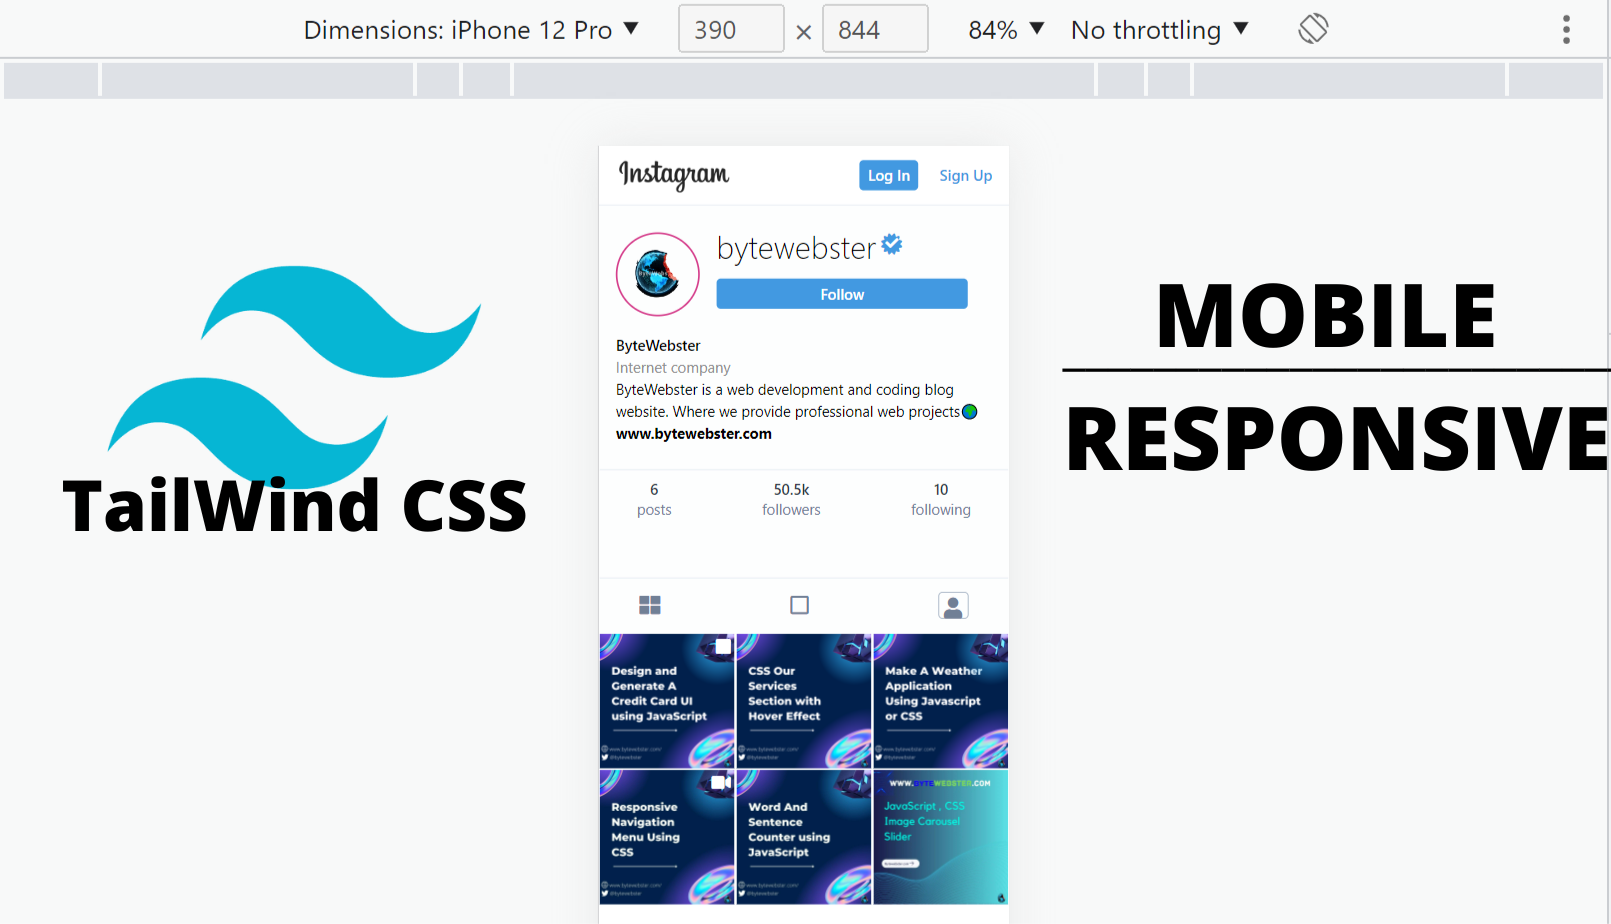 Nếu bạn đang tìm kiếm một thiết kế trang cá nhân Instagram đẹp và chuyên nghiệp, hãy ghé thăm hình ảnh liên quan đến Tailwind CSS Instagram Profile Page. Với phong cách đơn giản, tinh tế nhưng đầy tính ứng dụng, bạn sẽ không phải lãng phí thời gian tìm kiếm bất kỳ giao diện nào khác.